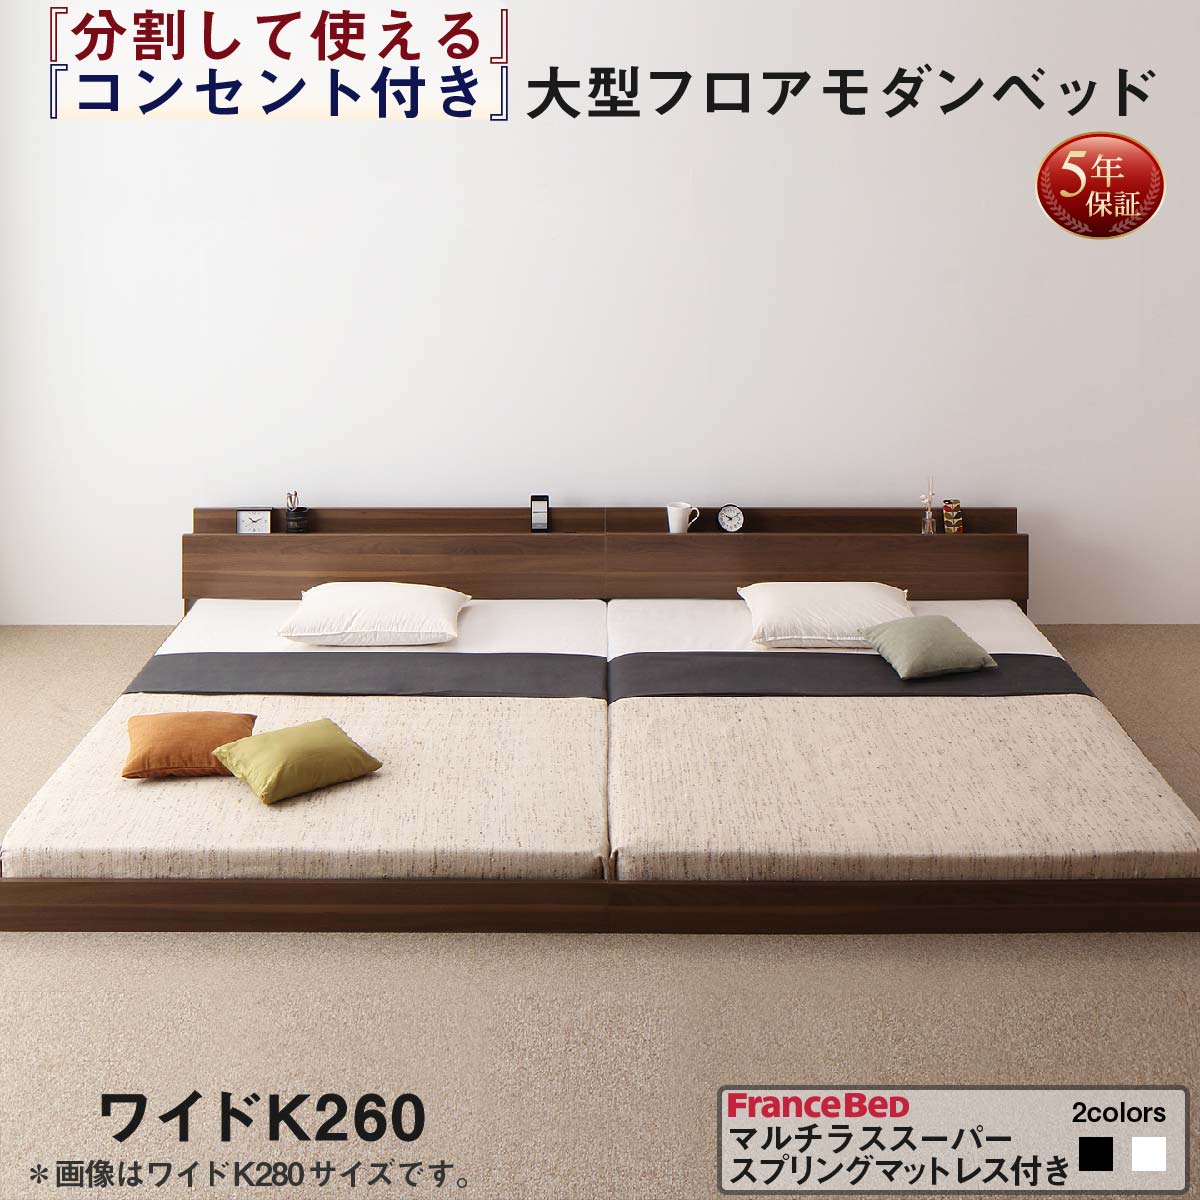 新着商品は ファミリーベッド 連結ベッド 大型ベッド ファミリー ベッド 連結 家族ベッド ローベッド マルチラススーパースプリング マットレス付き ワイドK260(SD+D)